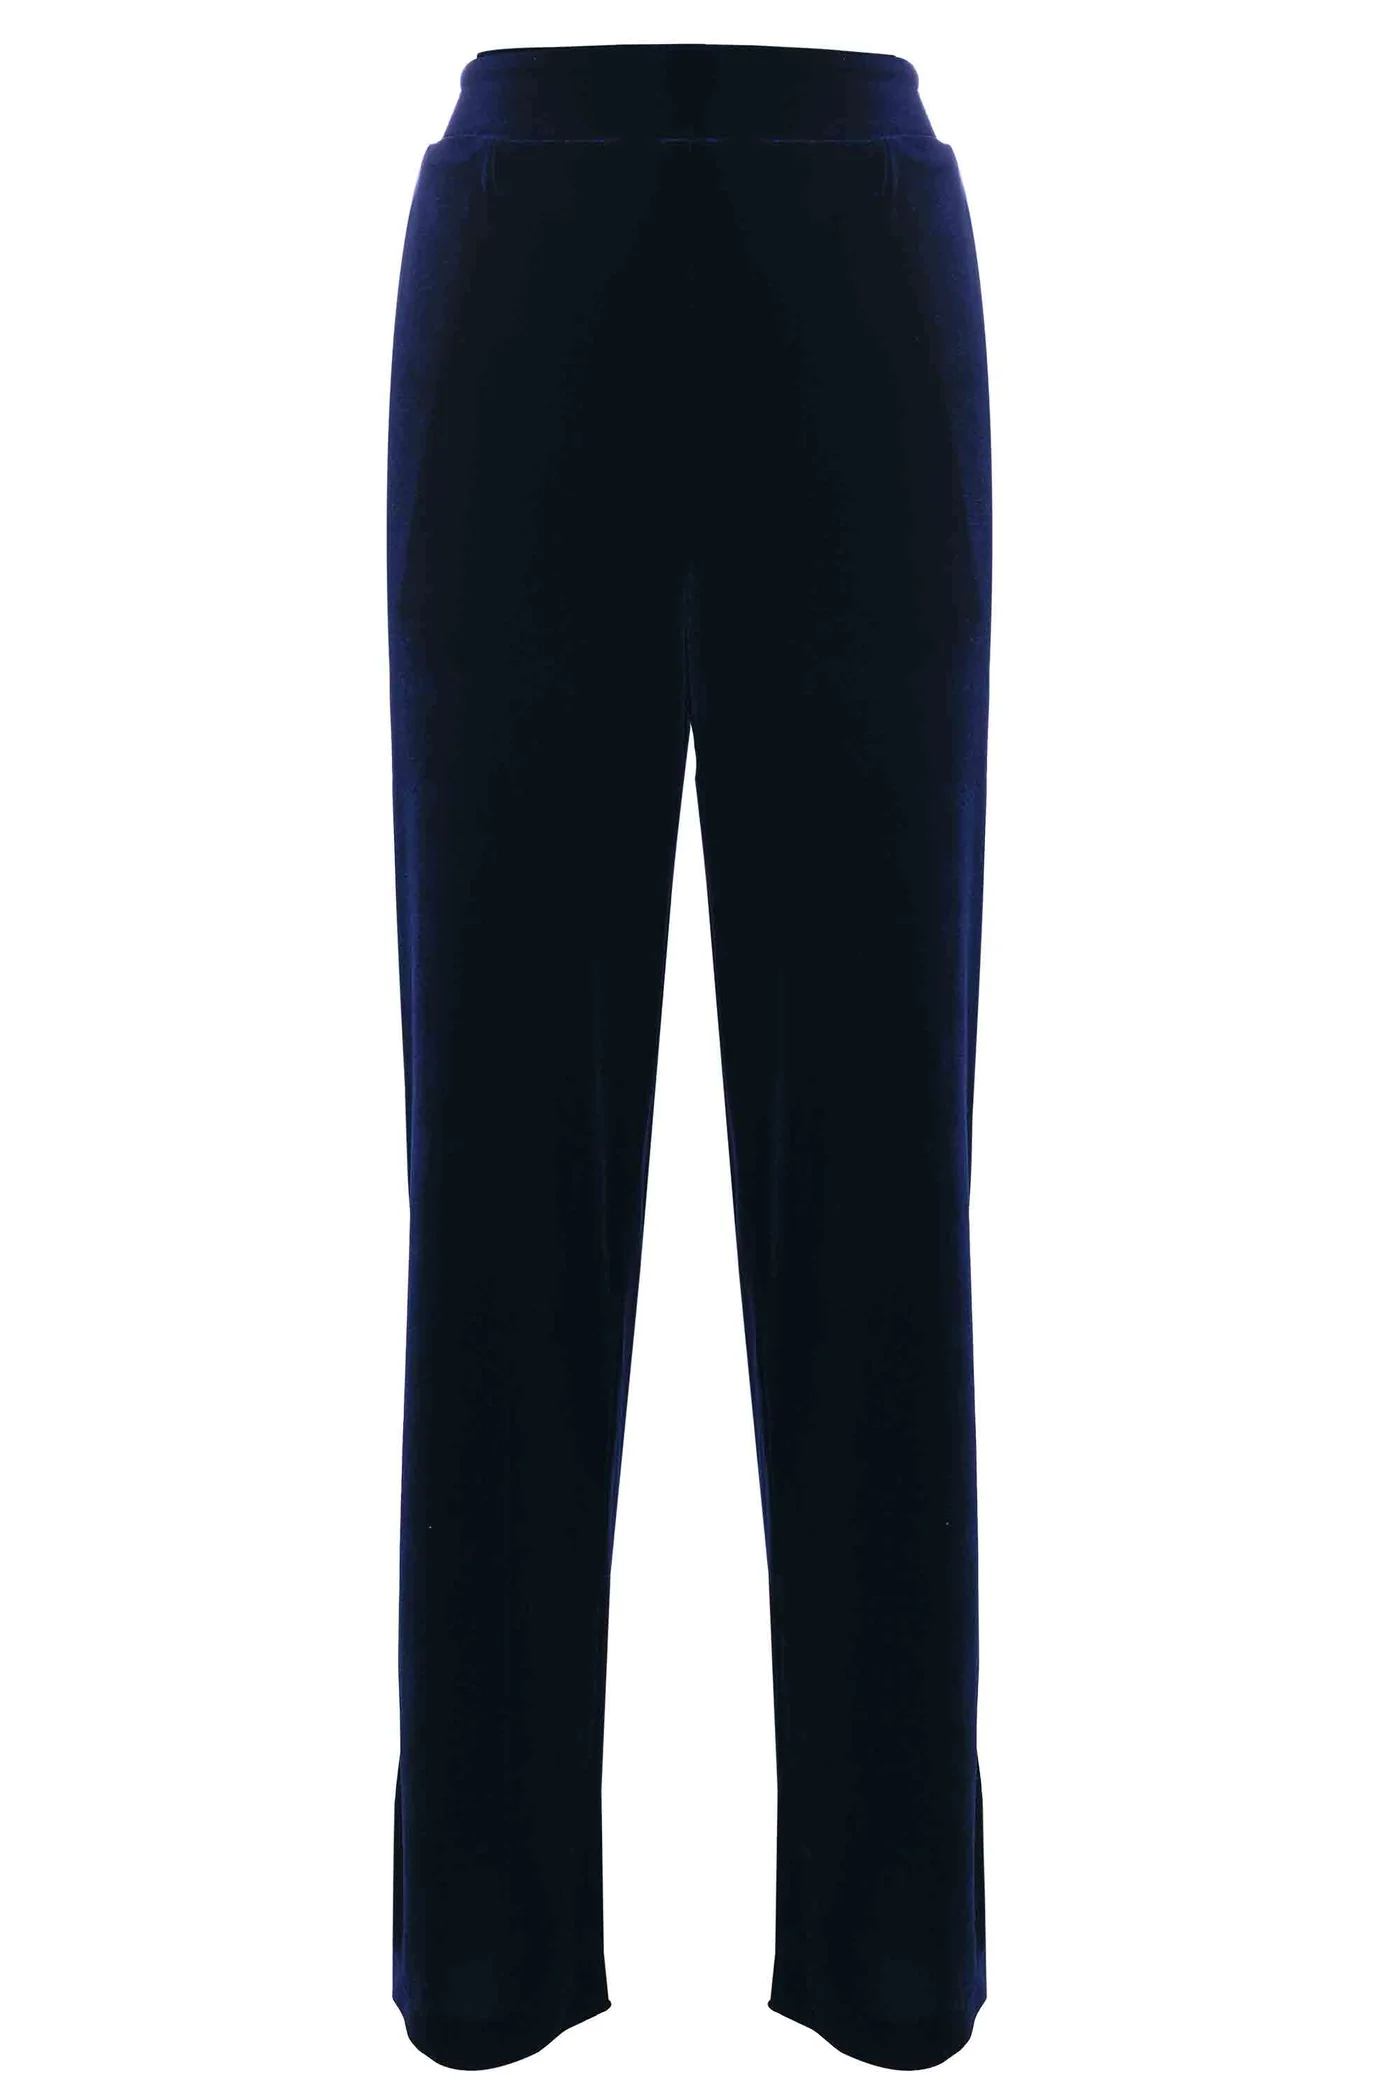 KOCCA pantalón ancho con terciopelo azul noche - 5